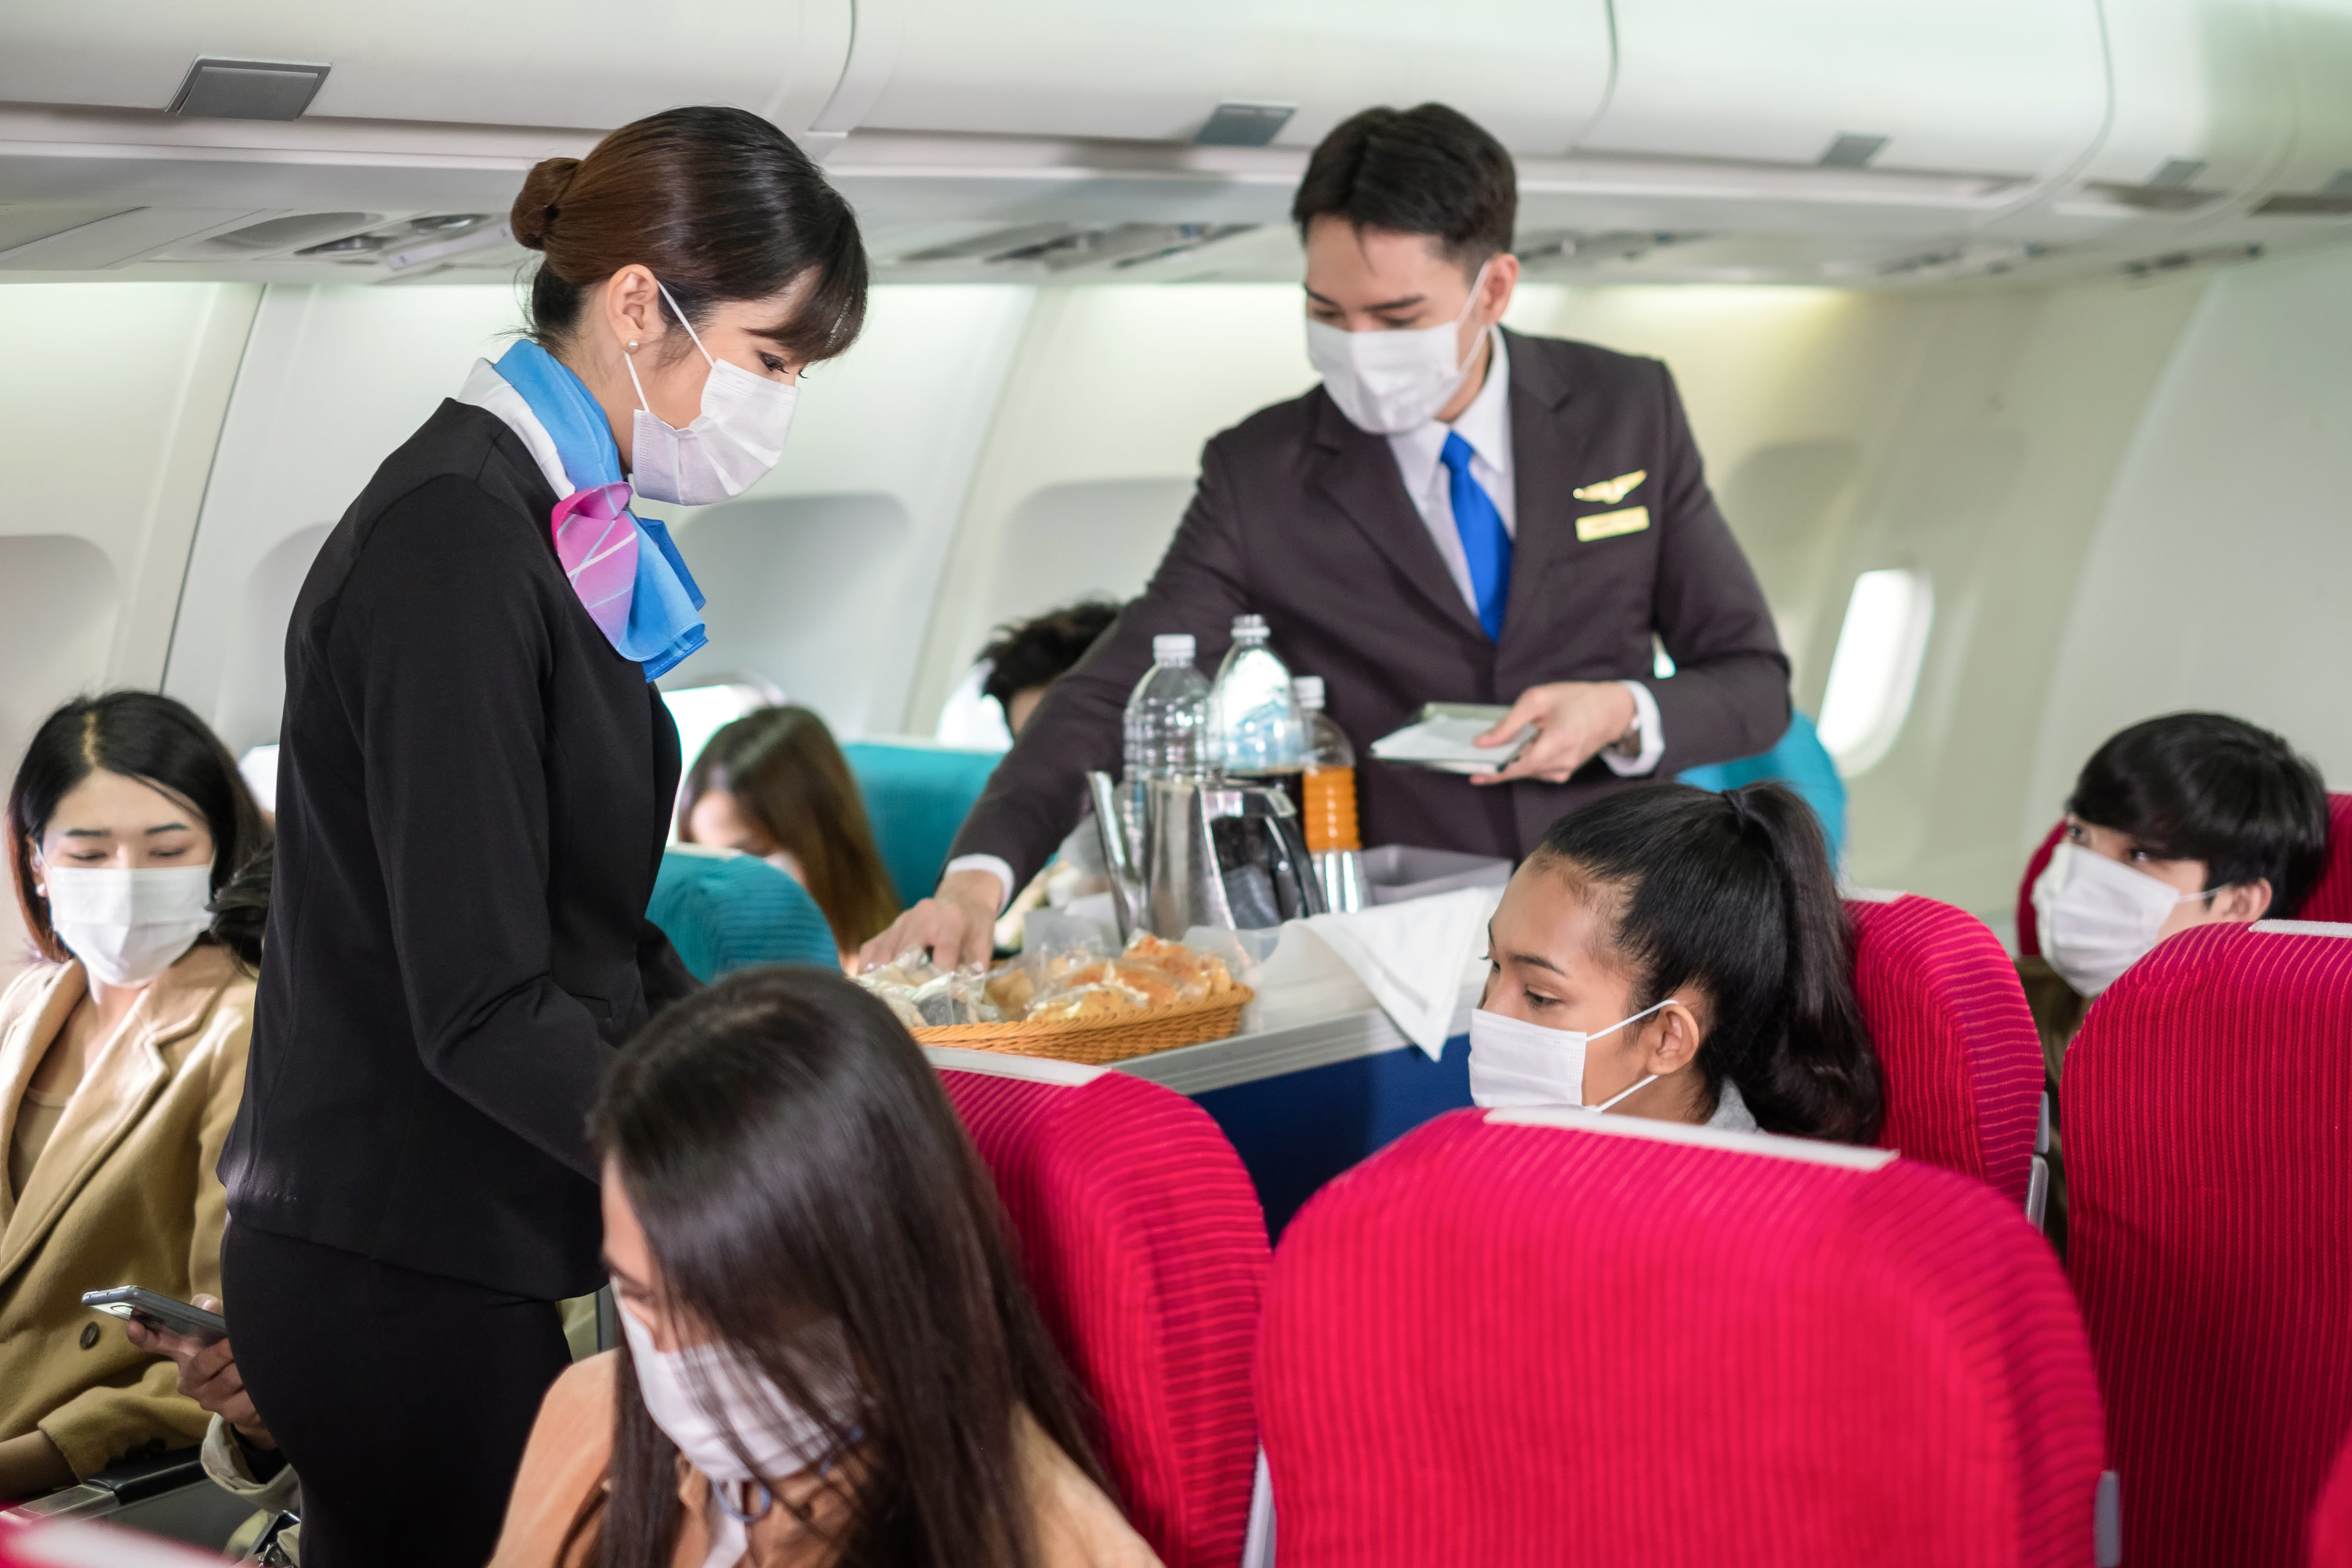 flight attendants serving drinks